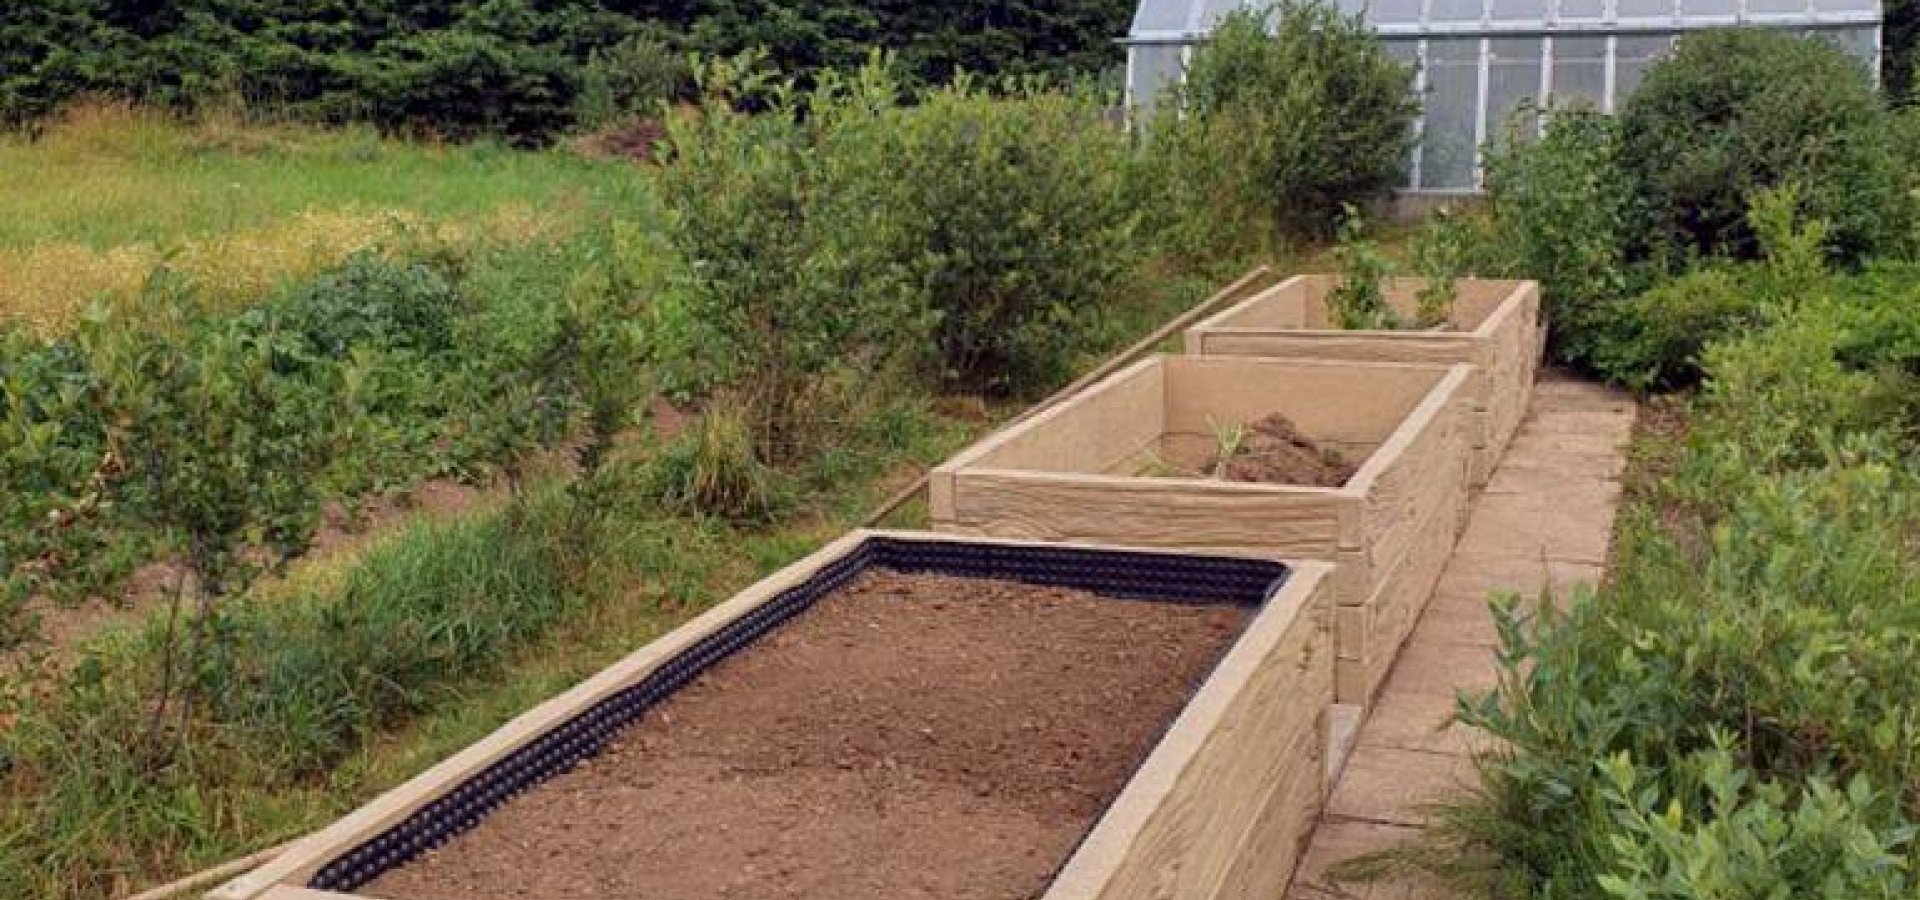 Vyvýšený záhon z betonových komponent vám usnadní pěstování bylinek, zeleniny i okrasných květin